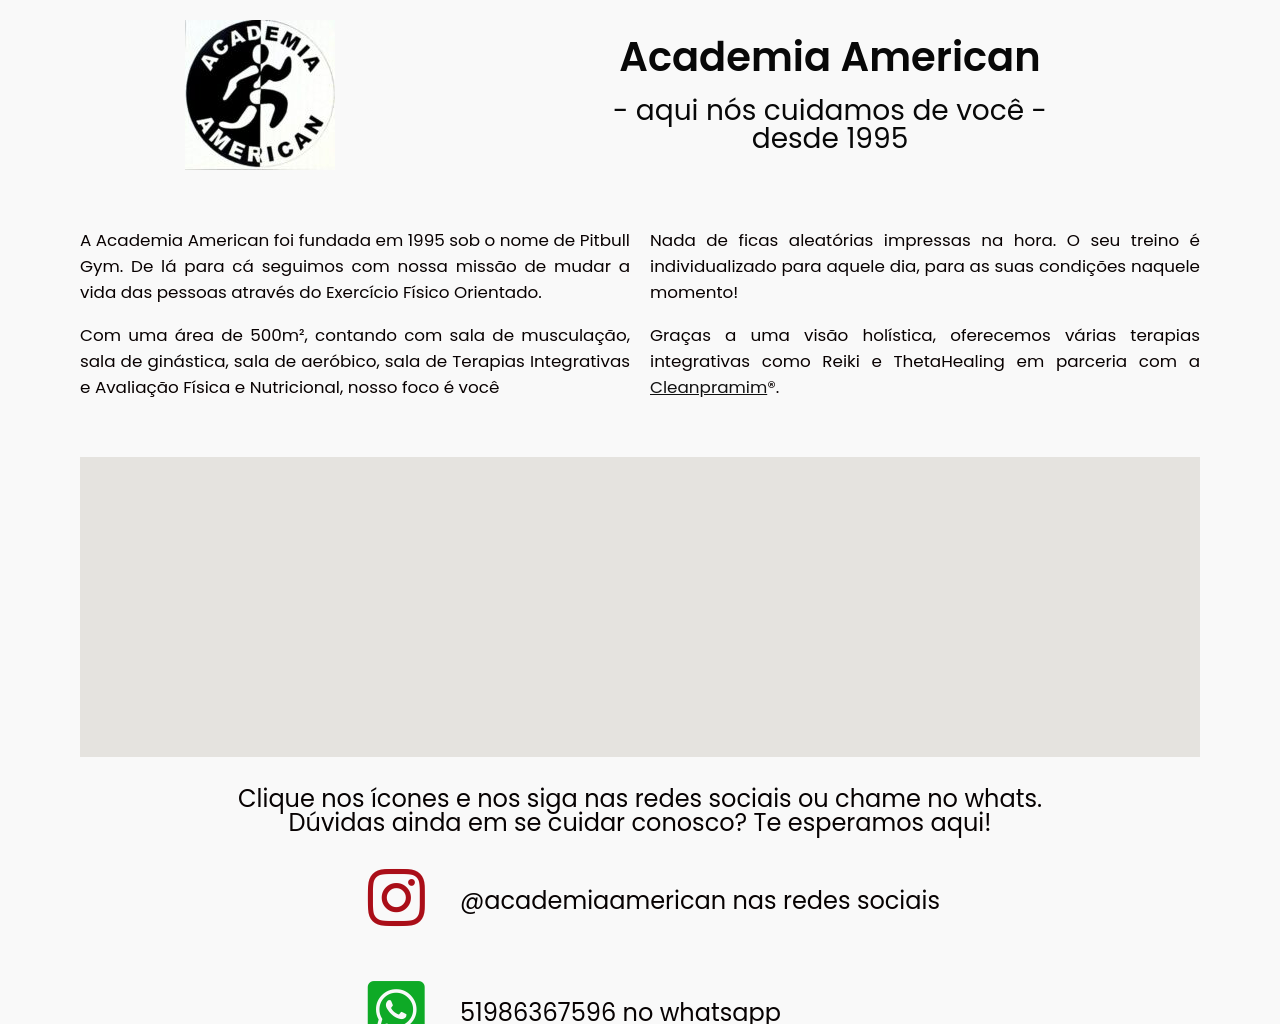 americangym.com.br